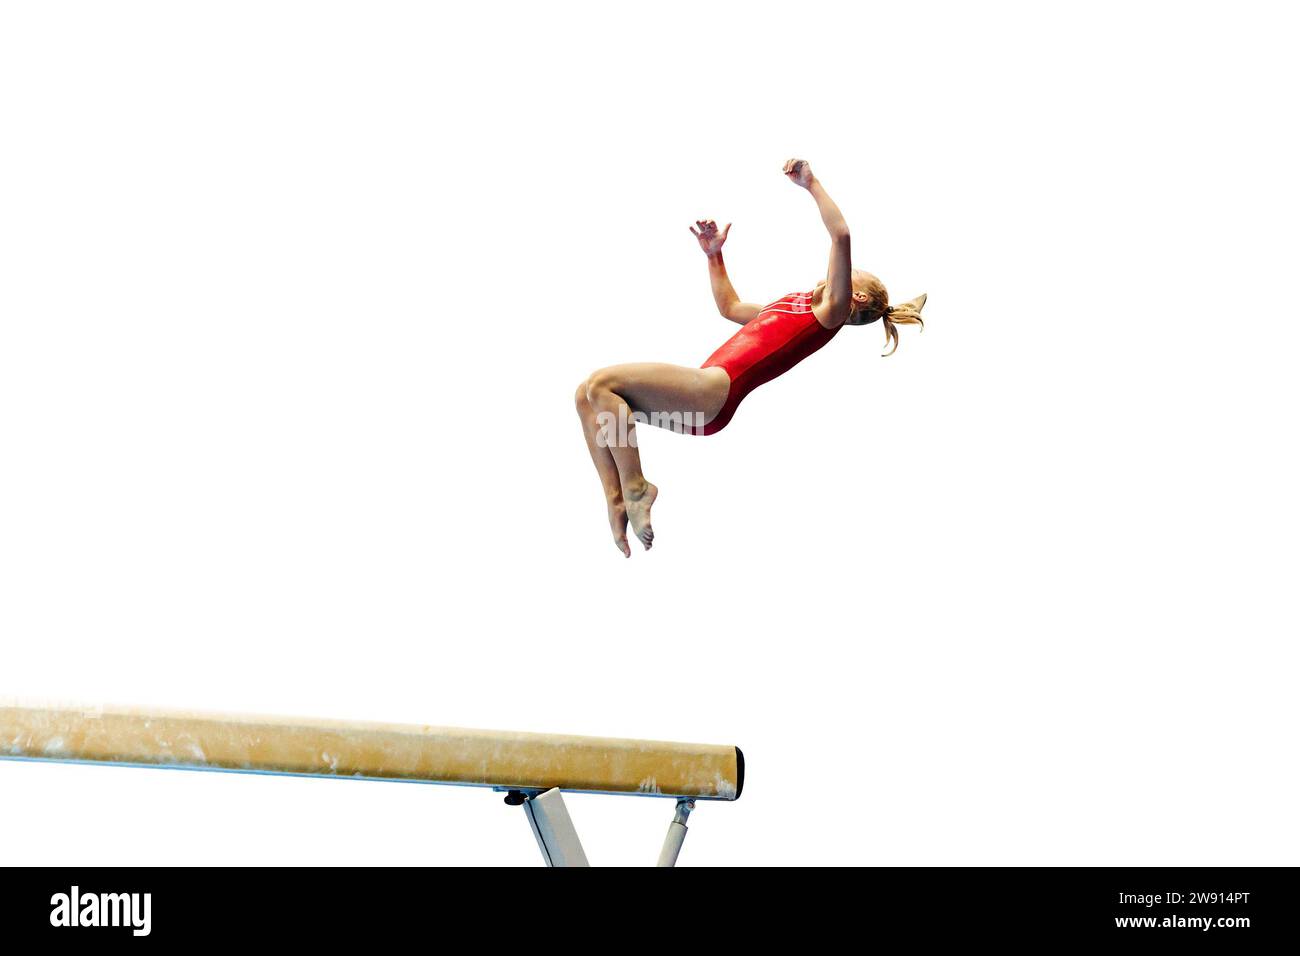 female gymnast exercise somersault on balance beam gymnastics isolated on white background Stock Photo